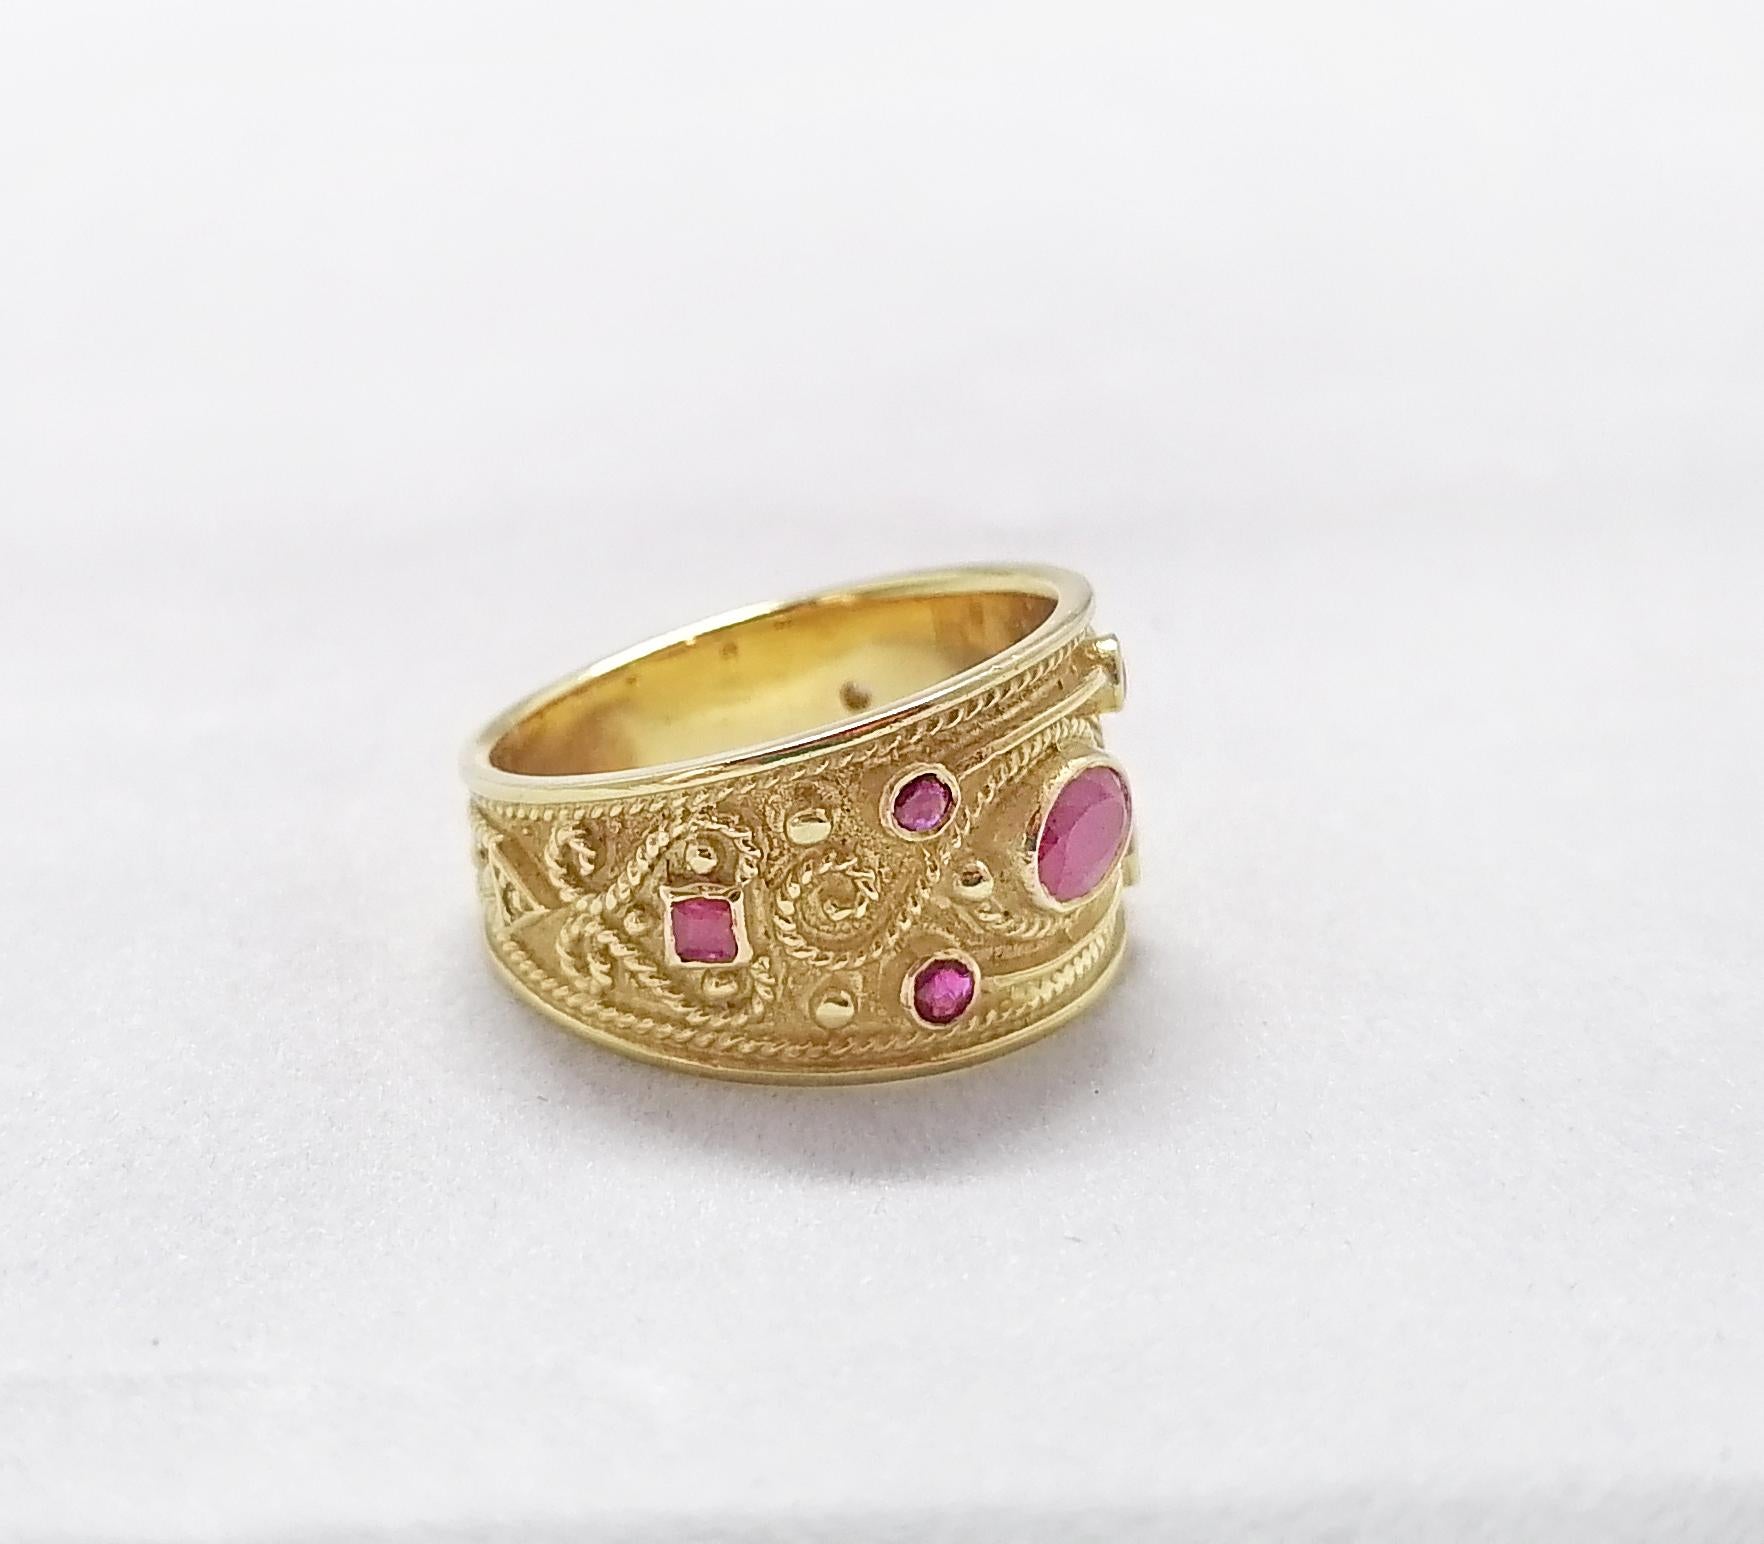 Cette bague à anneau en or jaune 18 carats du designer S.Georgios est entièrement réalisée à la main avec un travail de granulation de perles et un fond en velours unique. Cette magnifique bague présente un rubis naturel ovale au centre, encadré de